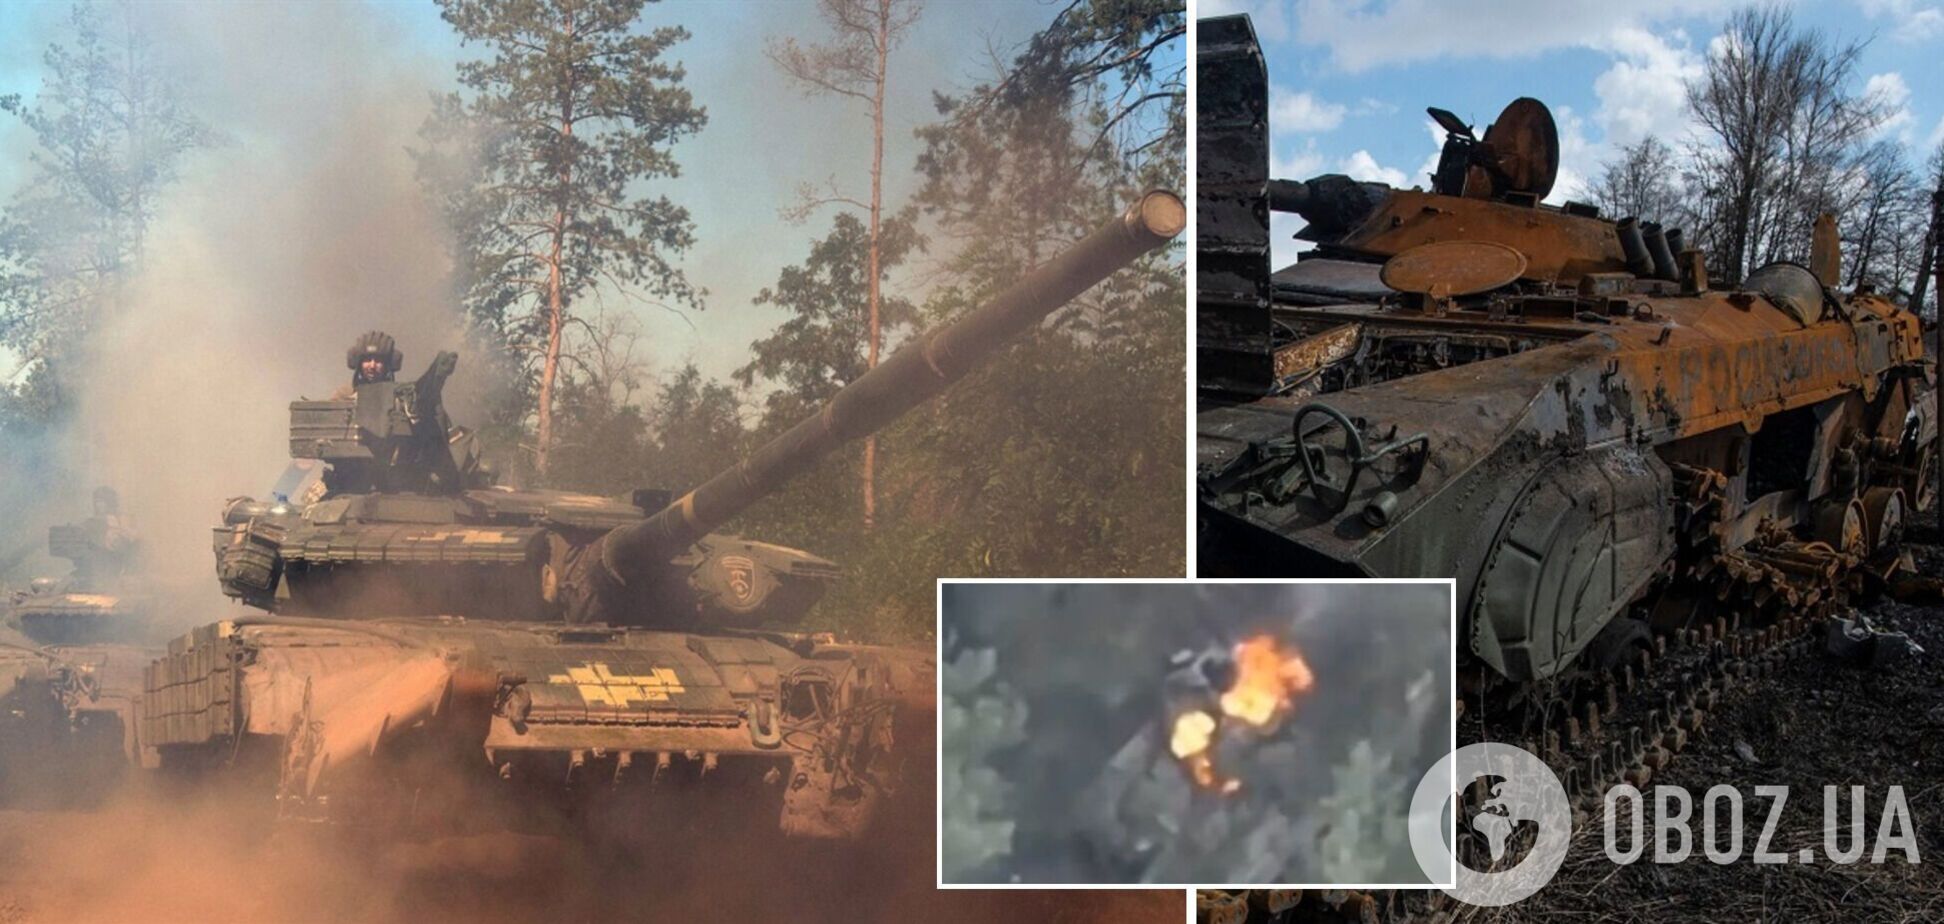 'Спалахнув як смолоскип': воїни 30-ї ОМБр показали знищення ще одного танка окупантів. Відео